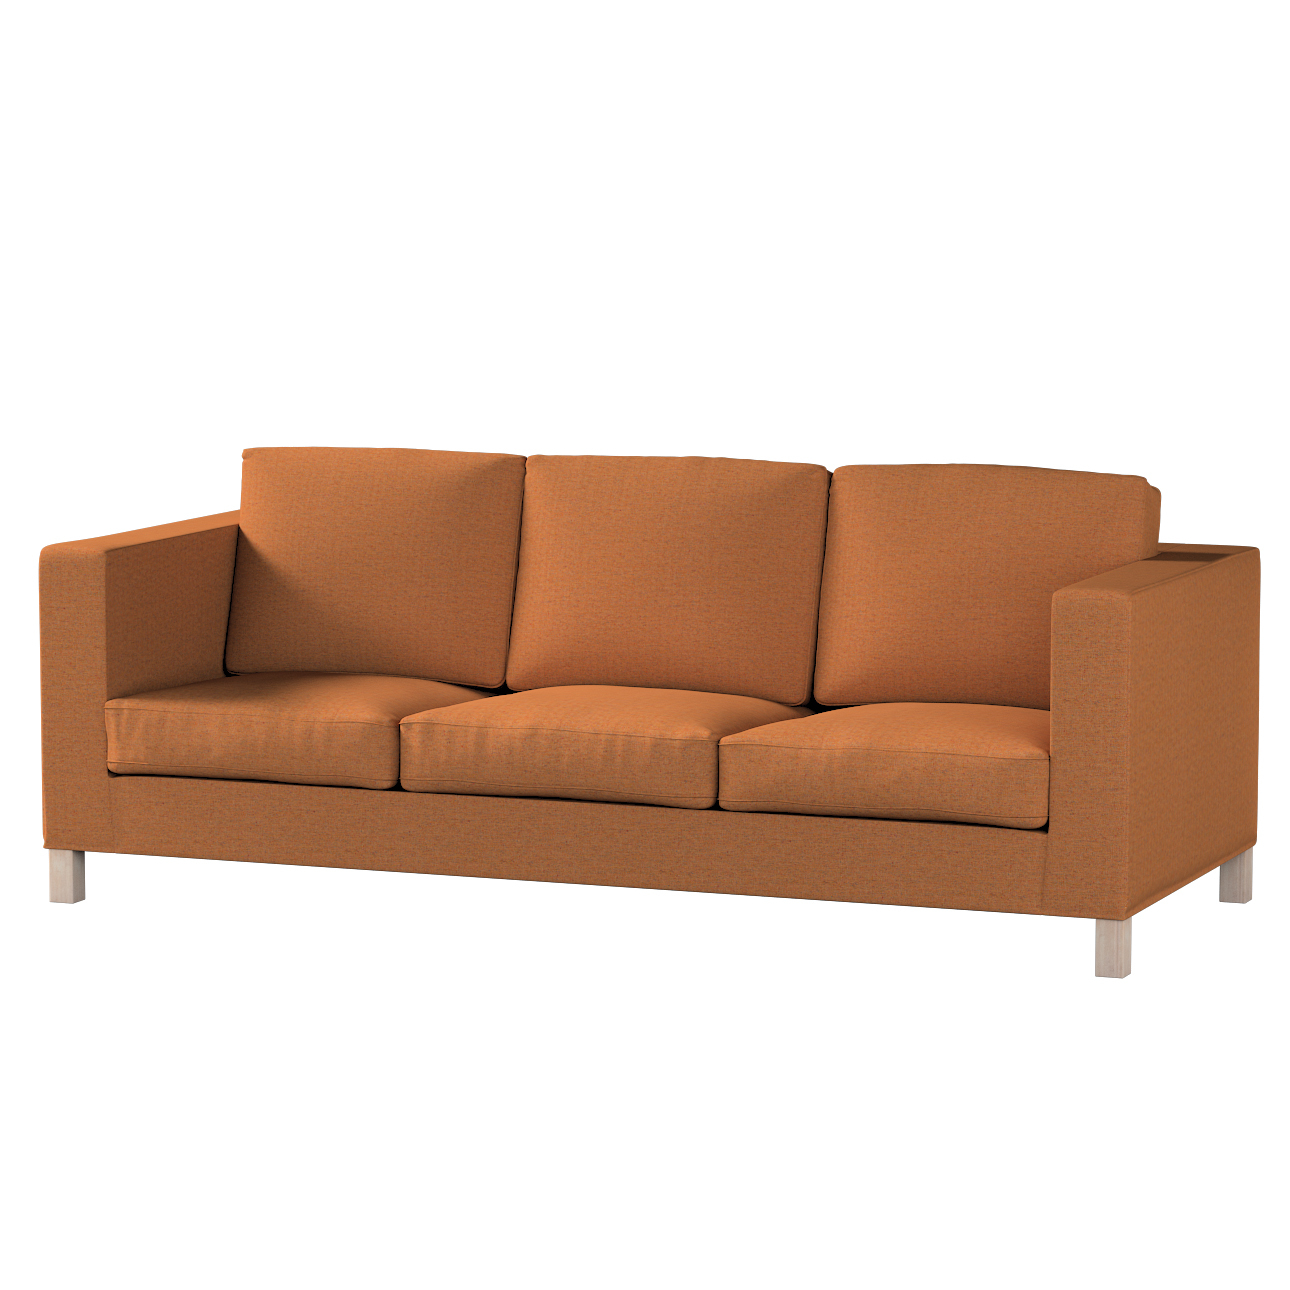 Bezug für Karlanda 3-Sitzer Sofa nicht ausklappbar, kurz, orange, Bezug für günstig online kaufen